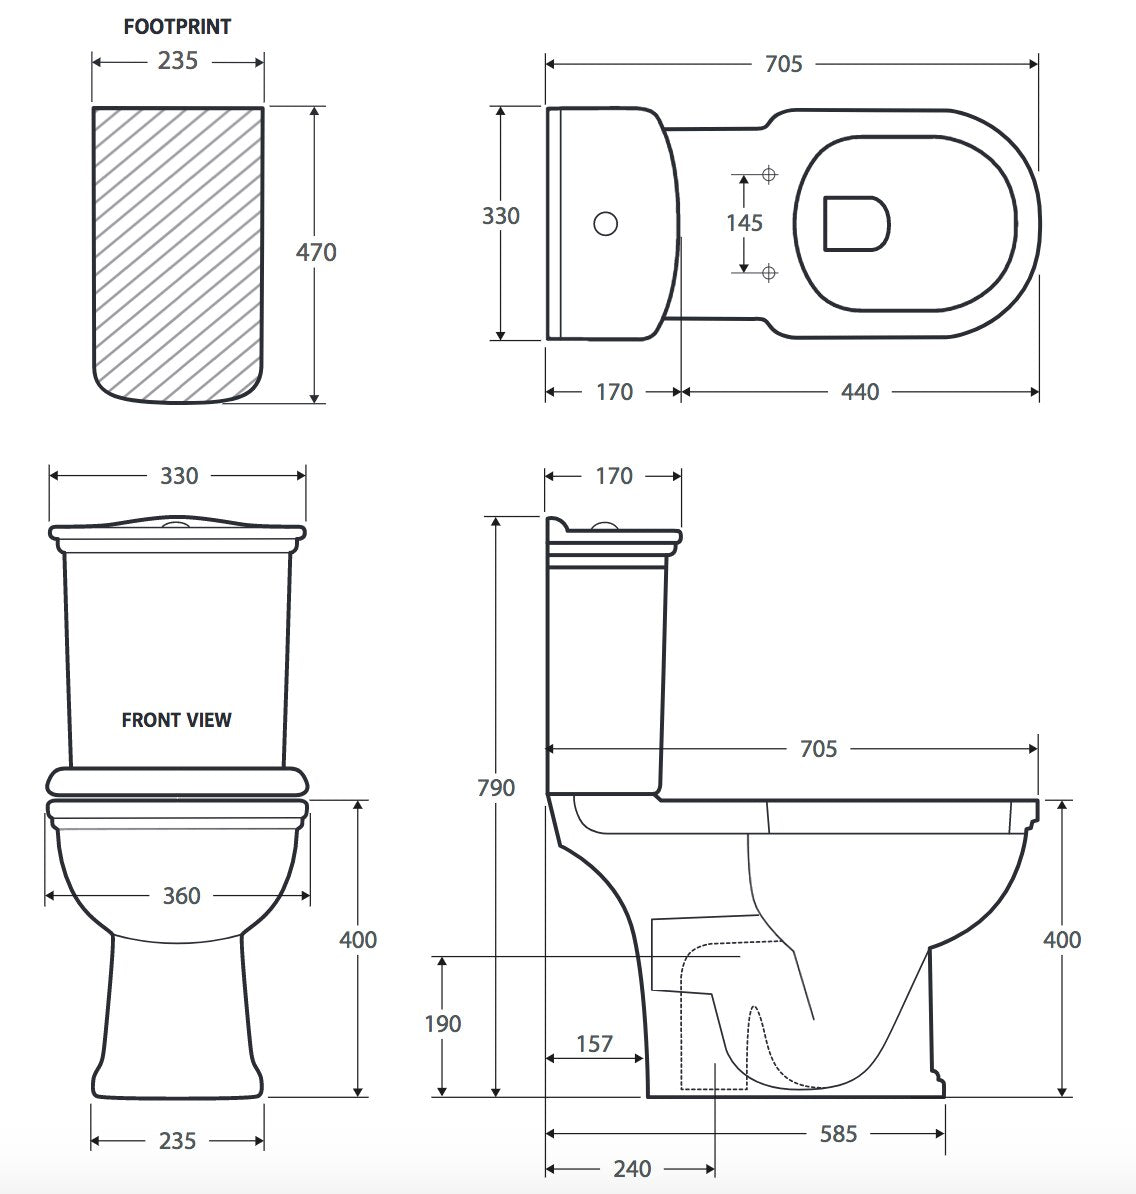 Fienza RAK Washington Close-Coupled Toilet Suite Ivory